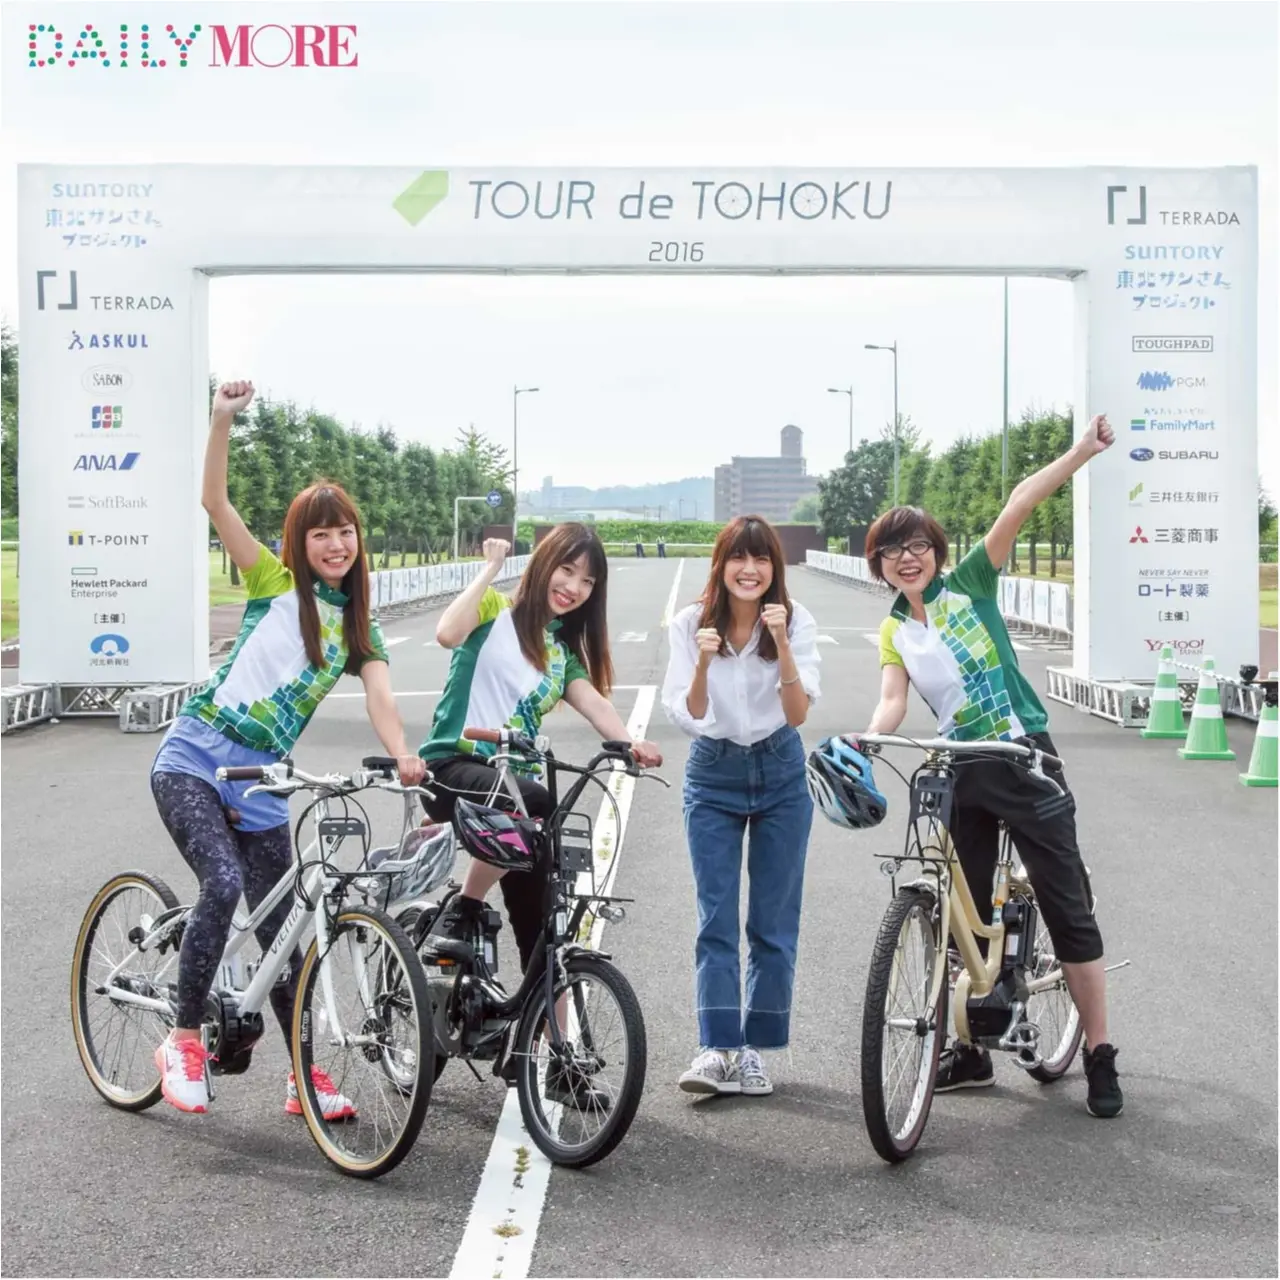 佐藤ありさも参加 人気の自転車イベント ツール ド 東北 レポート ライフスタイル最新情報 Daily More